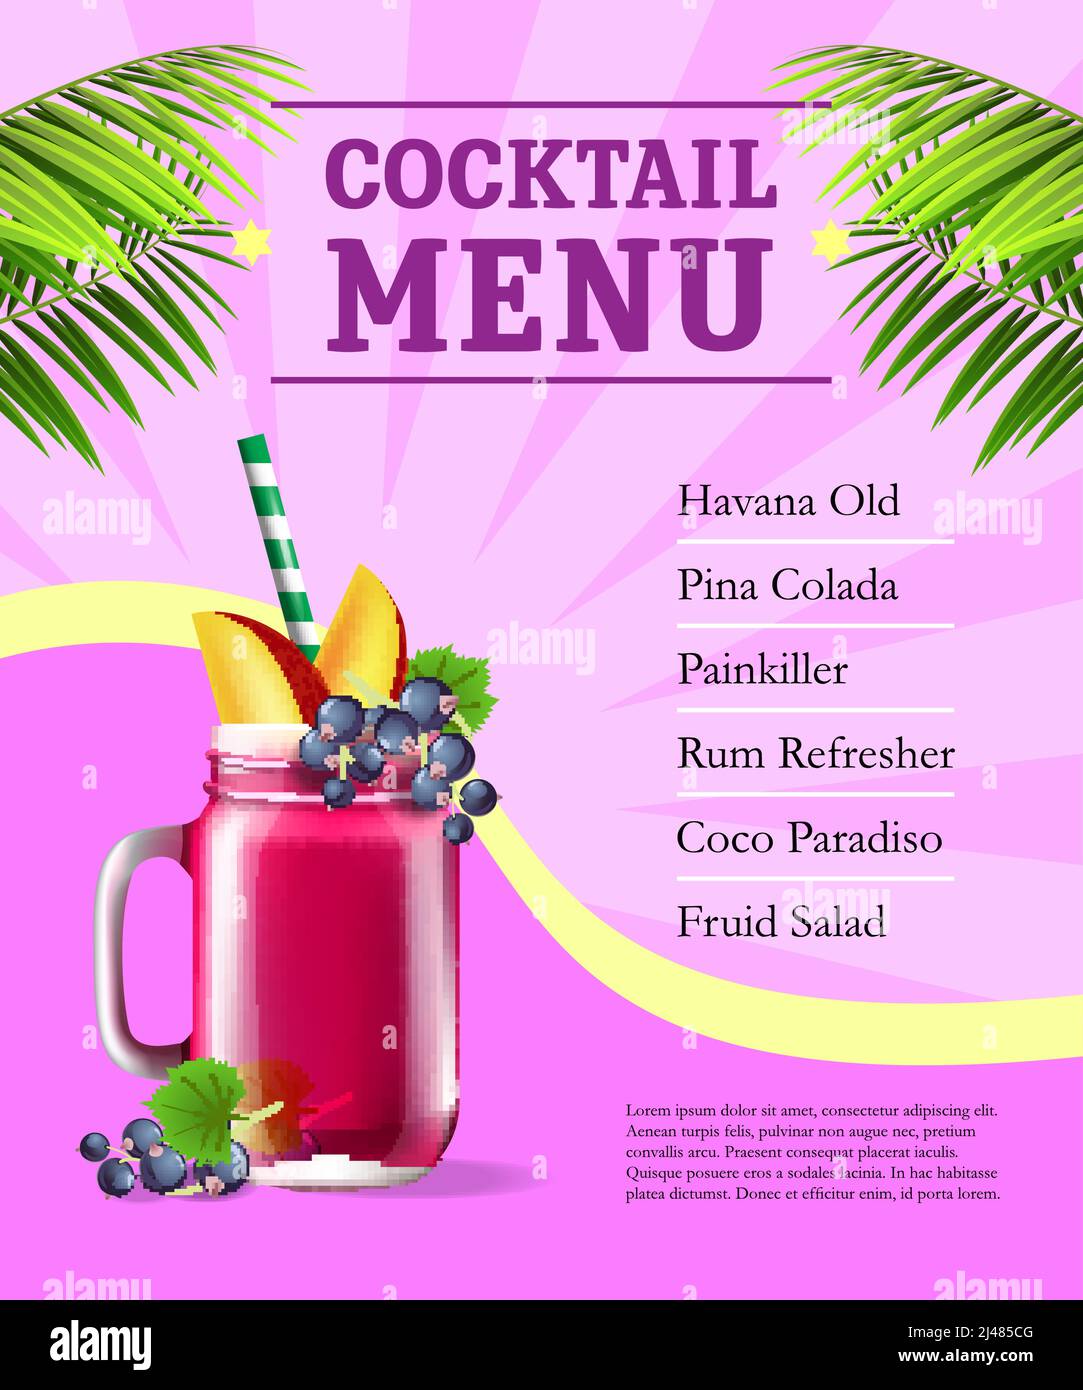 Thực đơn cocktail là điểm đến cho những tín đồ của thức uống hảo hạng. Với một loạt các loại cocktail với hương vị đậm đà và hấp dẫn, bạn sẽ không phải thất vọng với thực đơn cocktail này.